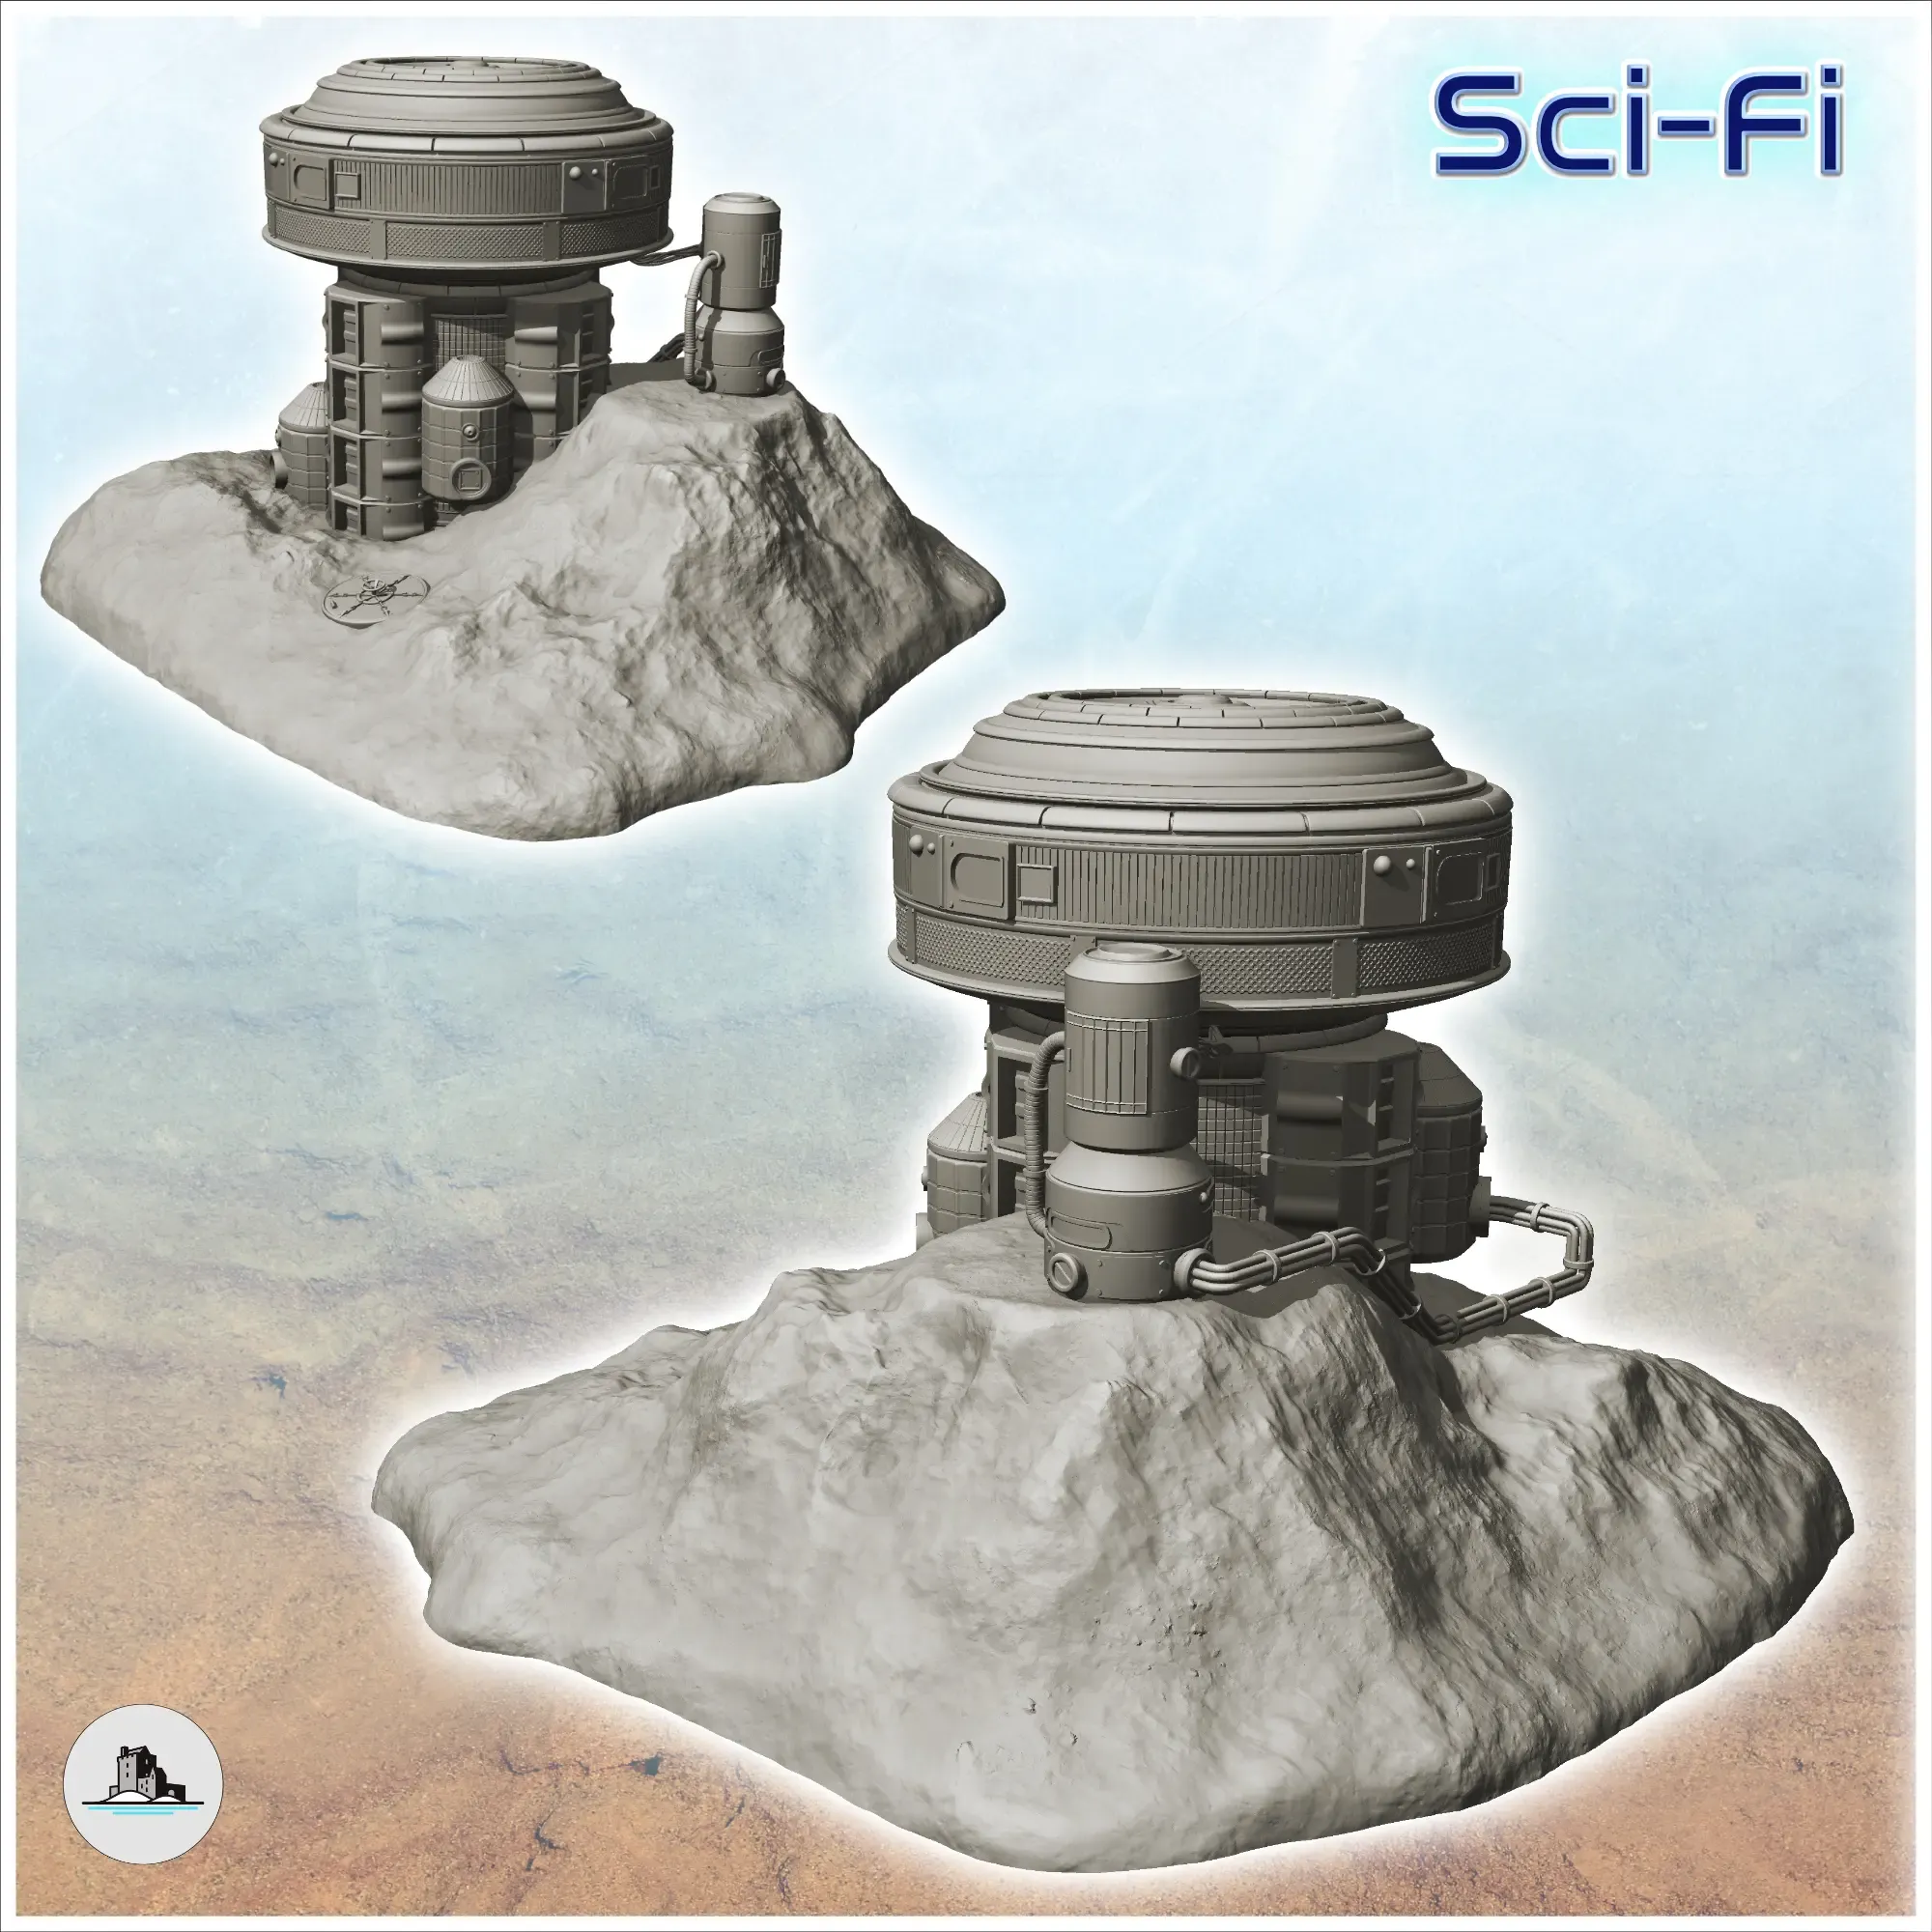 Energy sensor on rock - Terrain Scifi Science fiction SF